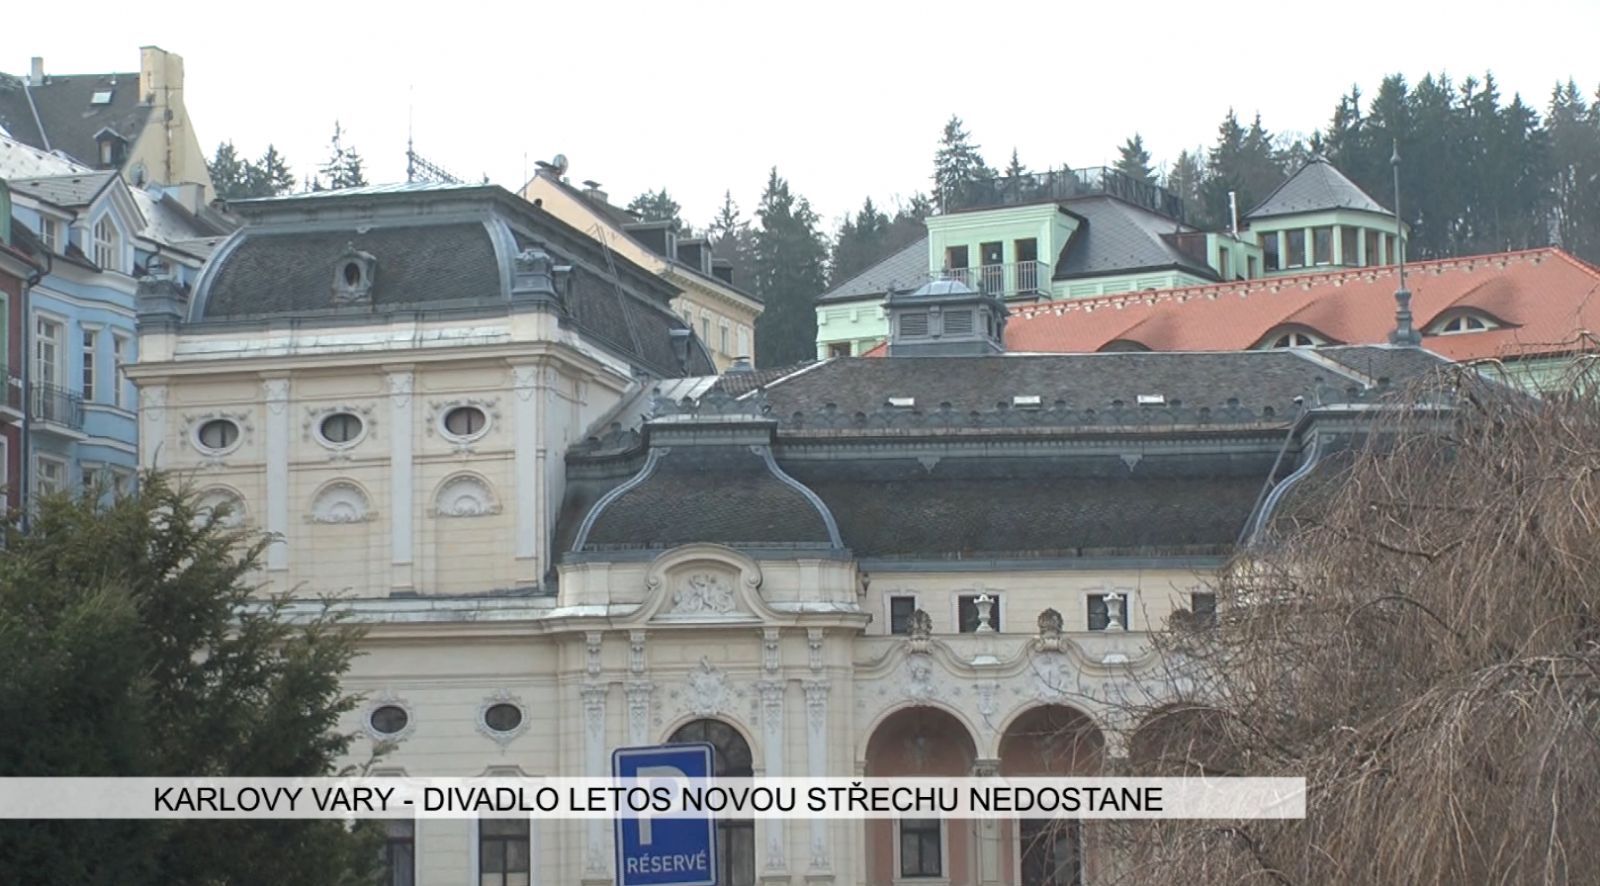 Karlovy Vary: Divadlo letos novou střechu nedostane (TV Západ)